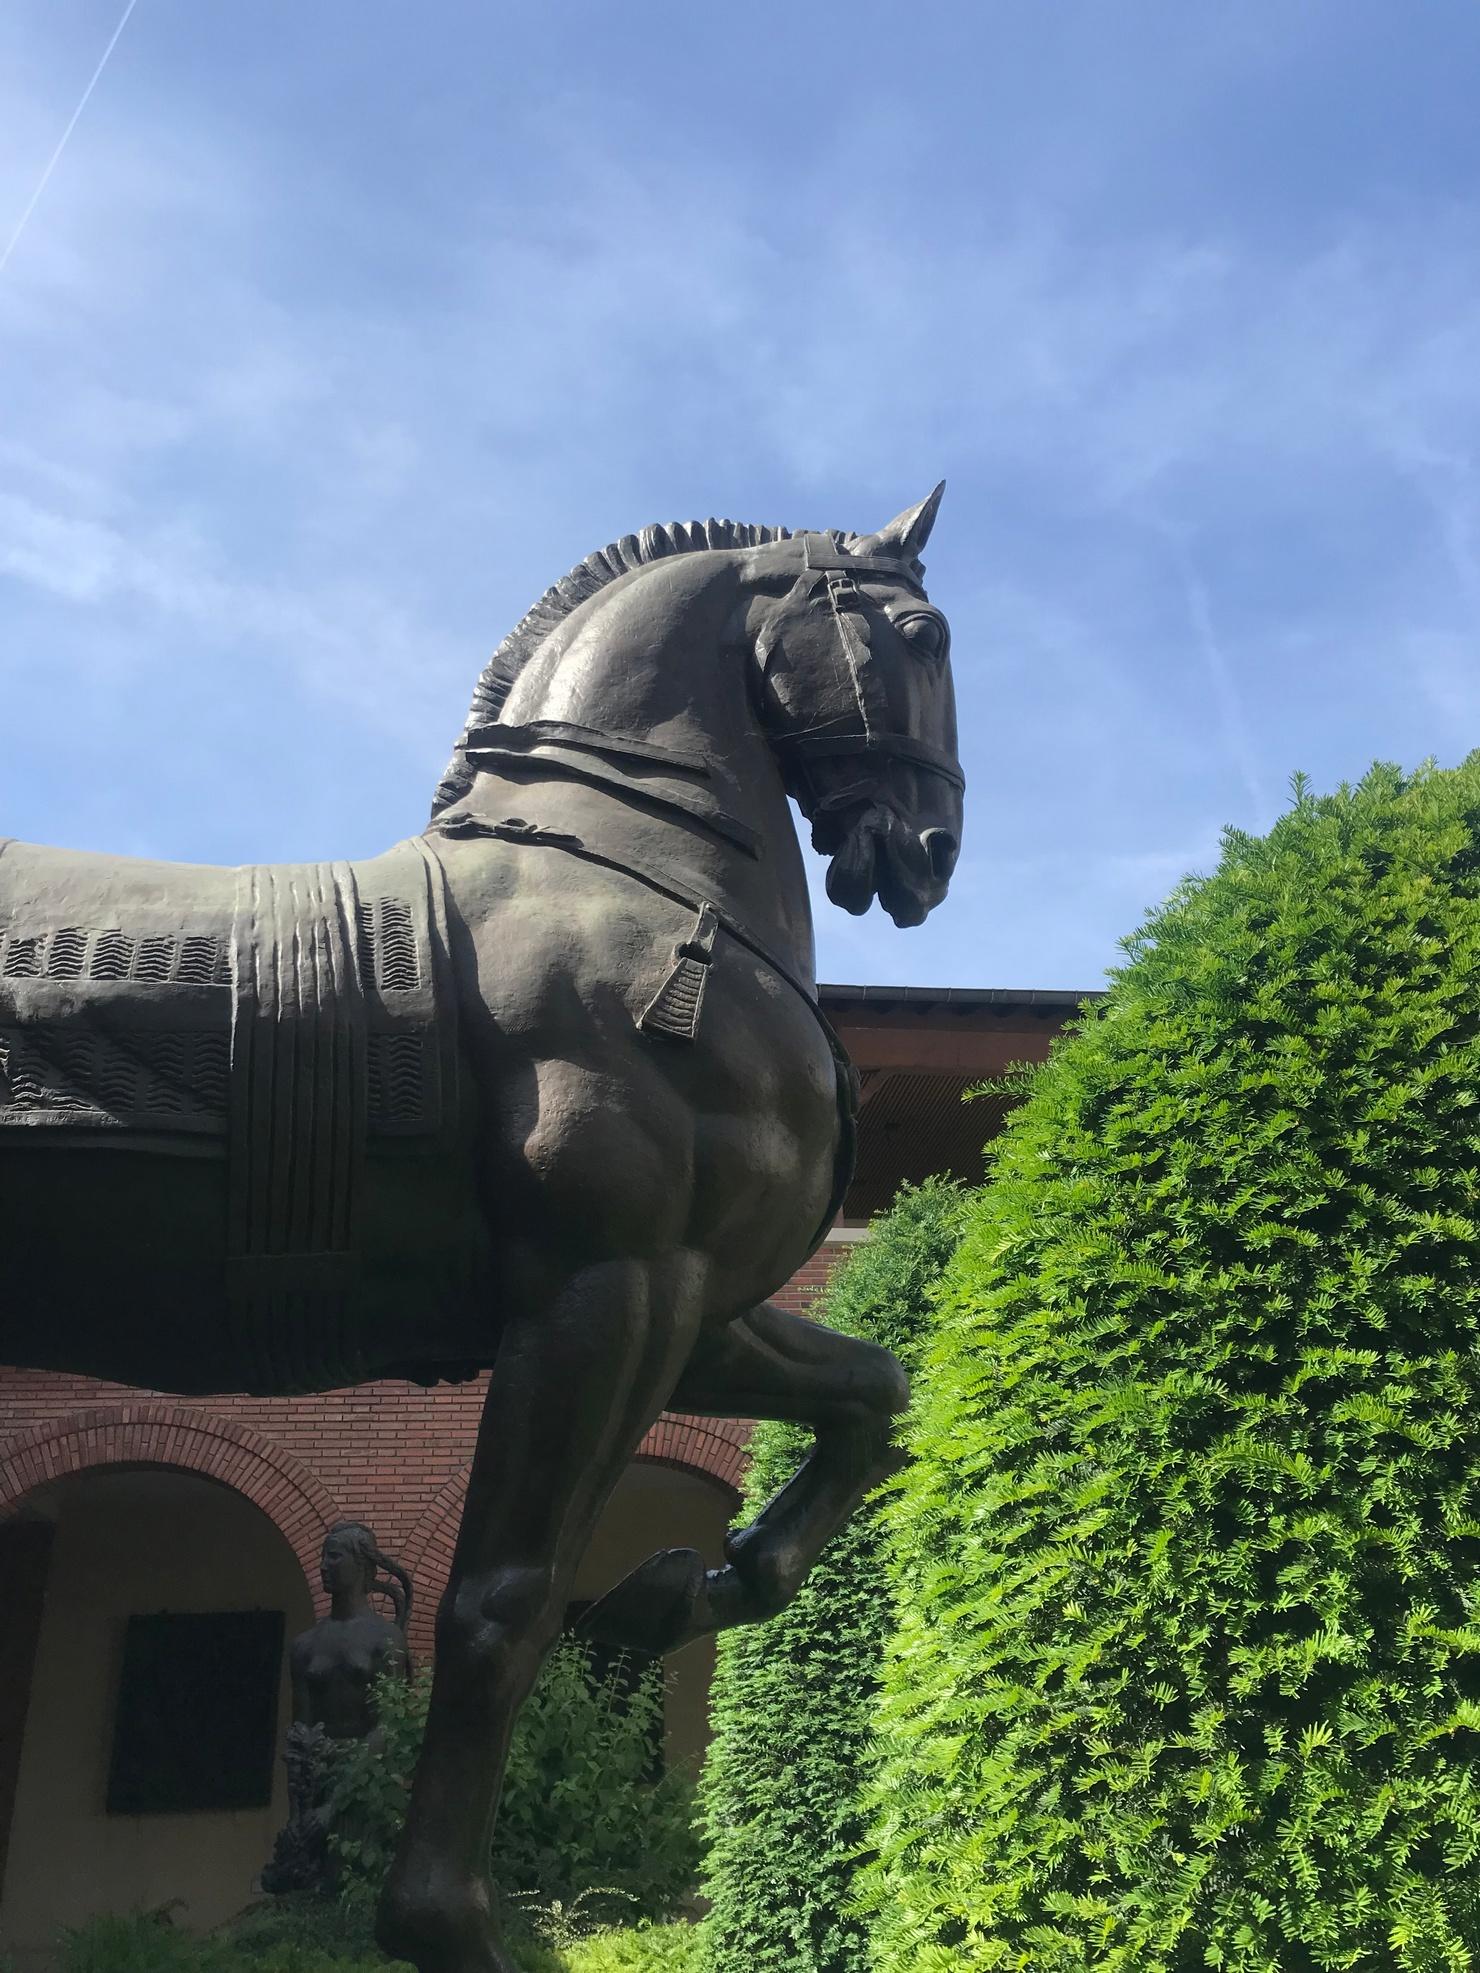 Les visiteurs du musée Bourdelle sont accueillis par un monumental cheval en bronze